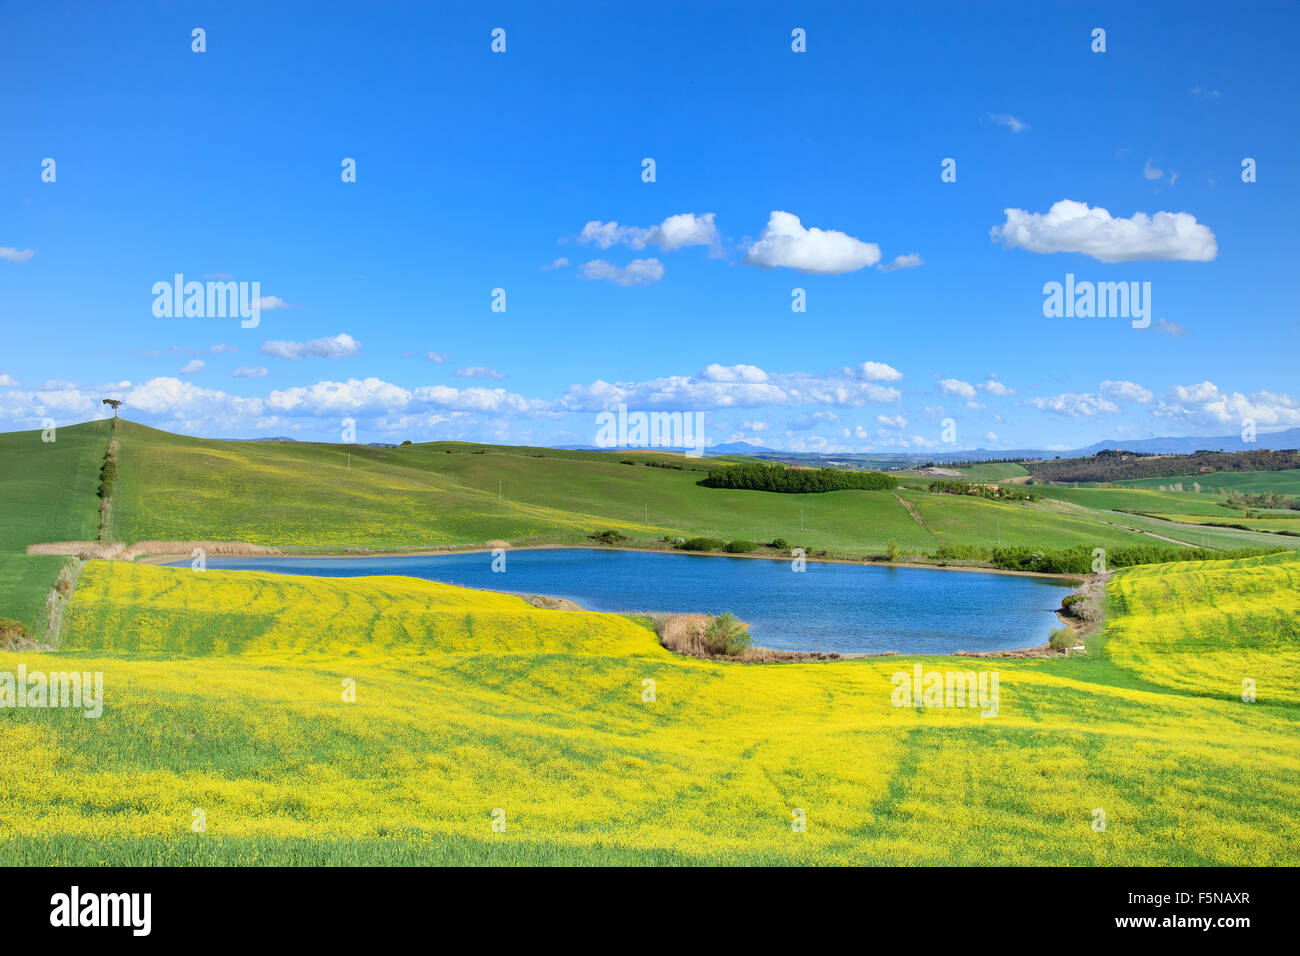 La toscane, paysage des crete senesi près de Siena, Italie, Europe. Petit lac bleu, vert et jaune des champs, ciel bleu avec des petits nuages Banque D'Images